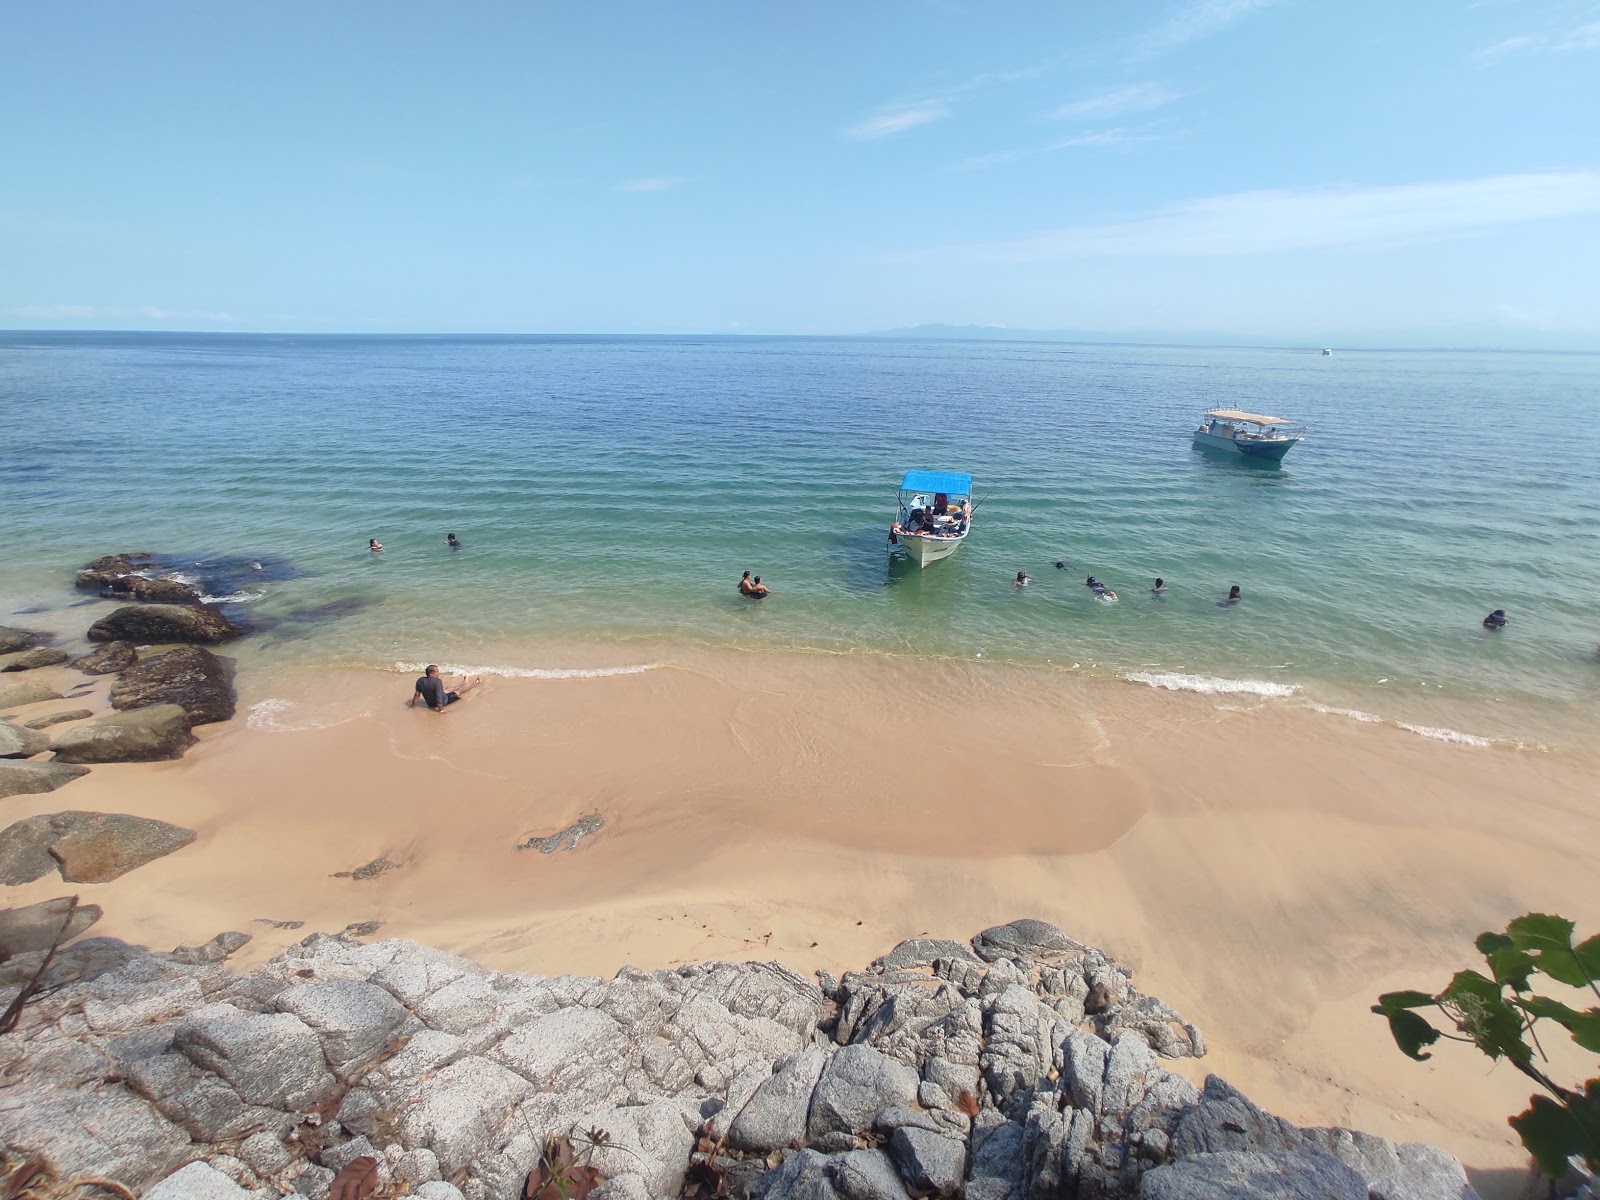 Foto von Madagascar beach befindet sich in natürlicher umgebung